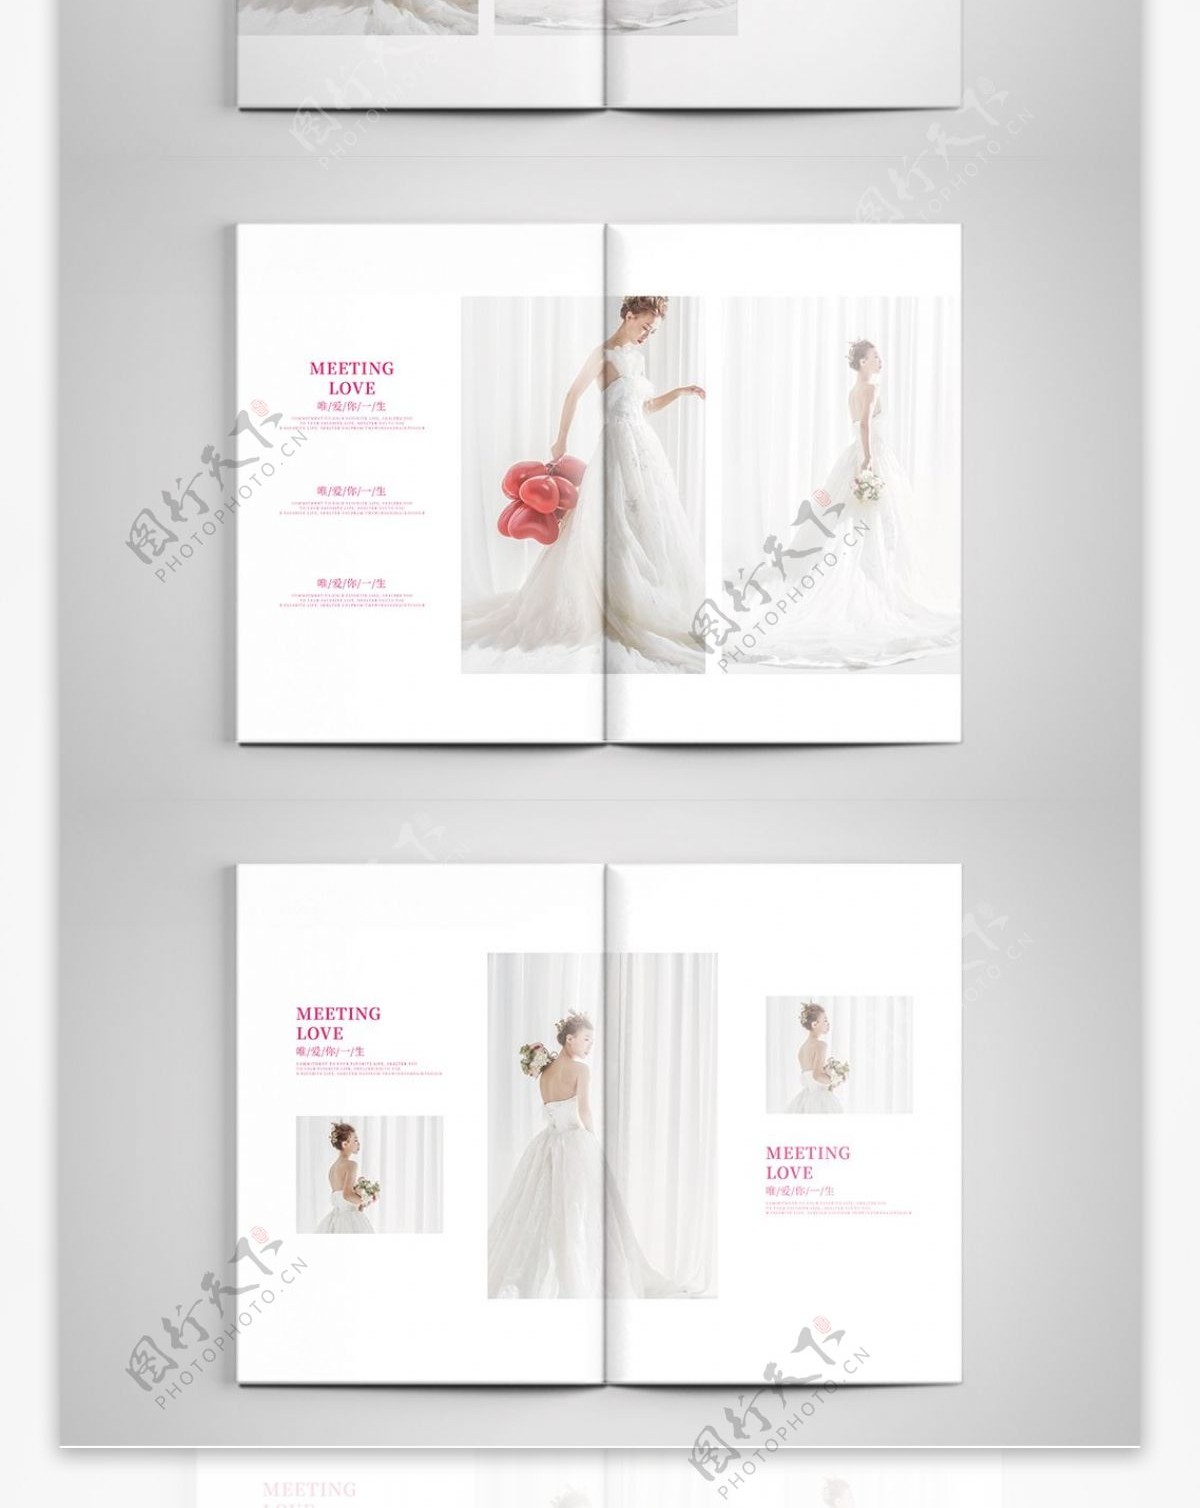 简约风唯美创意婚纱照宣传画册相册整套